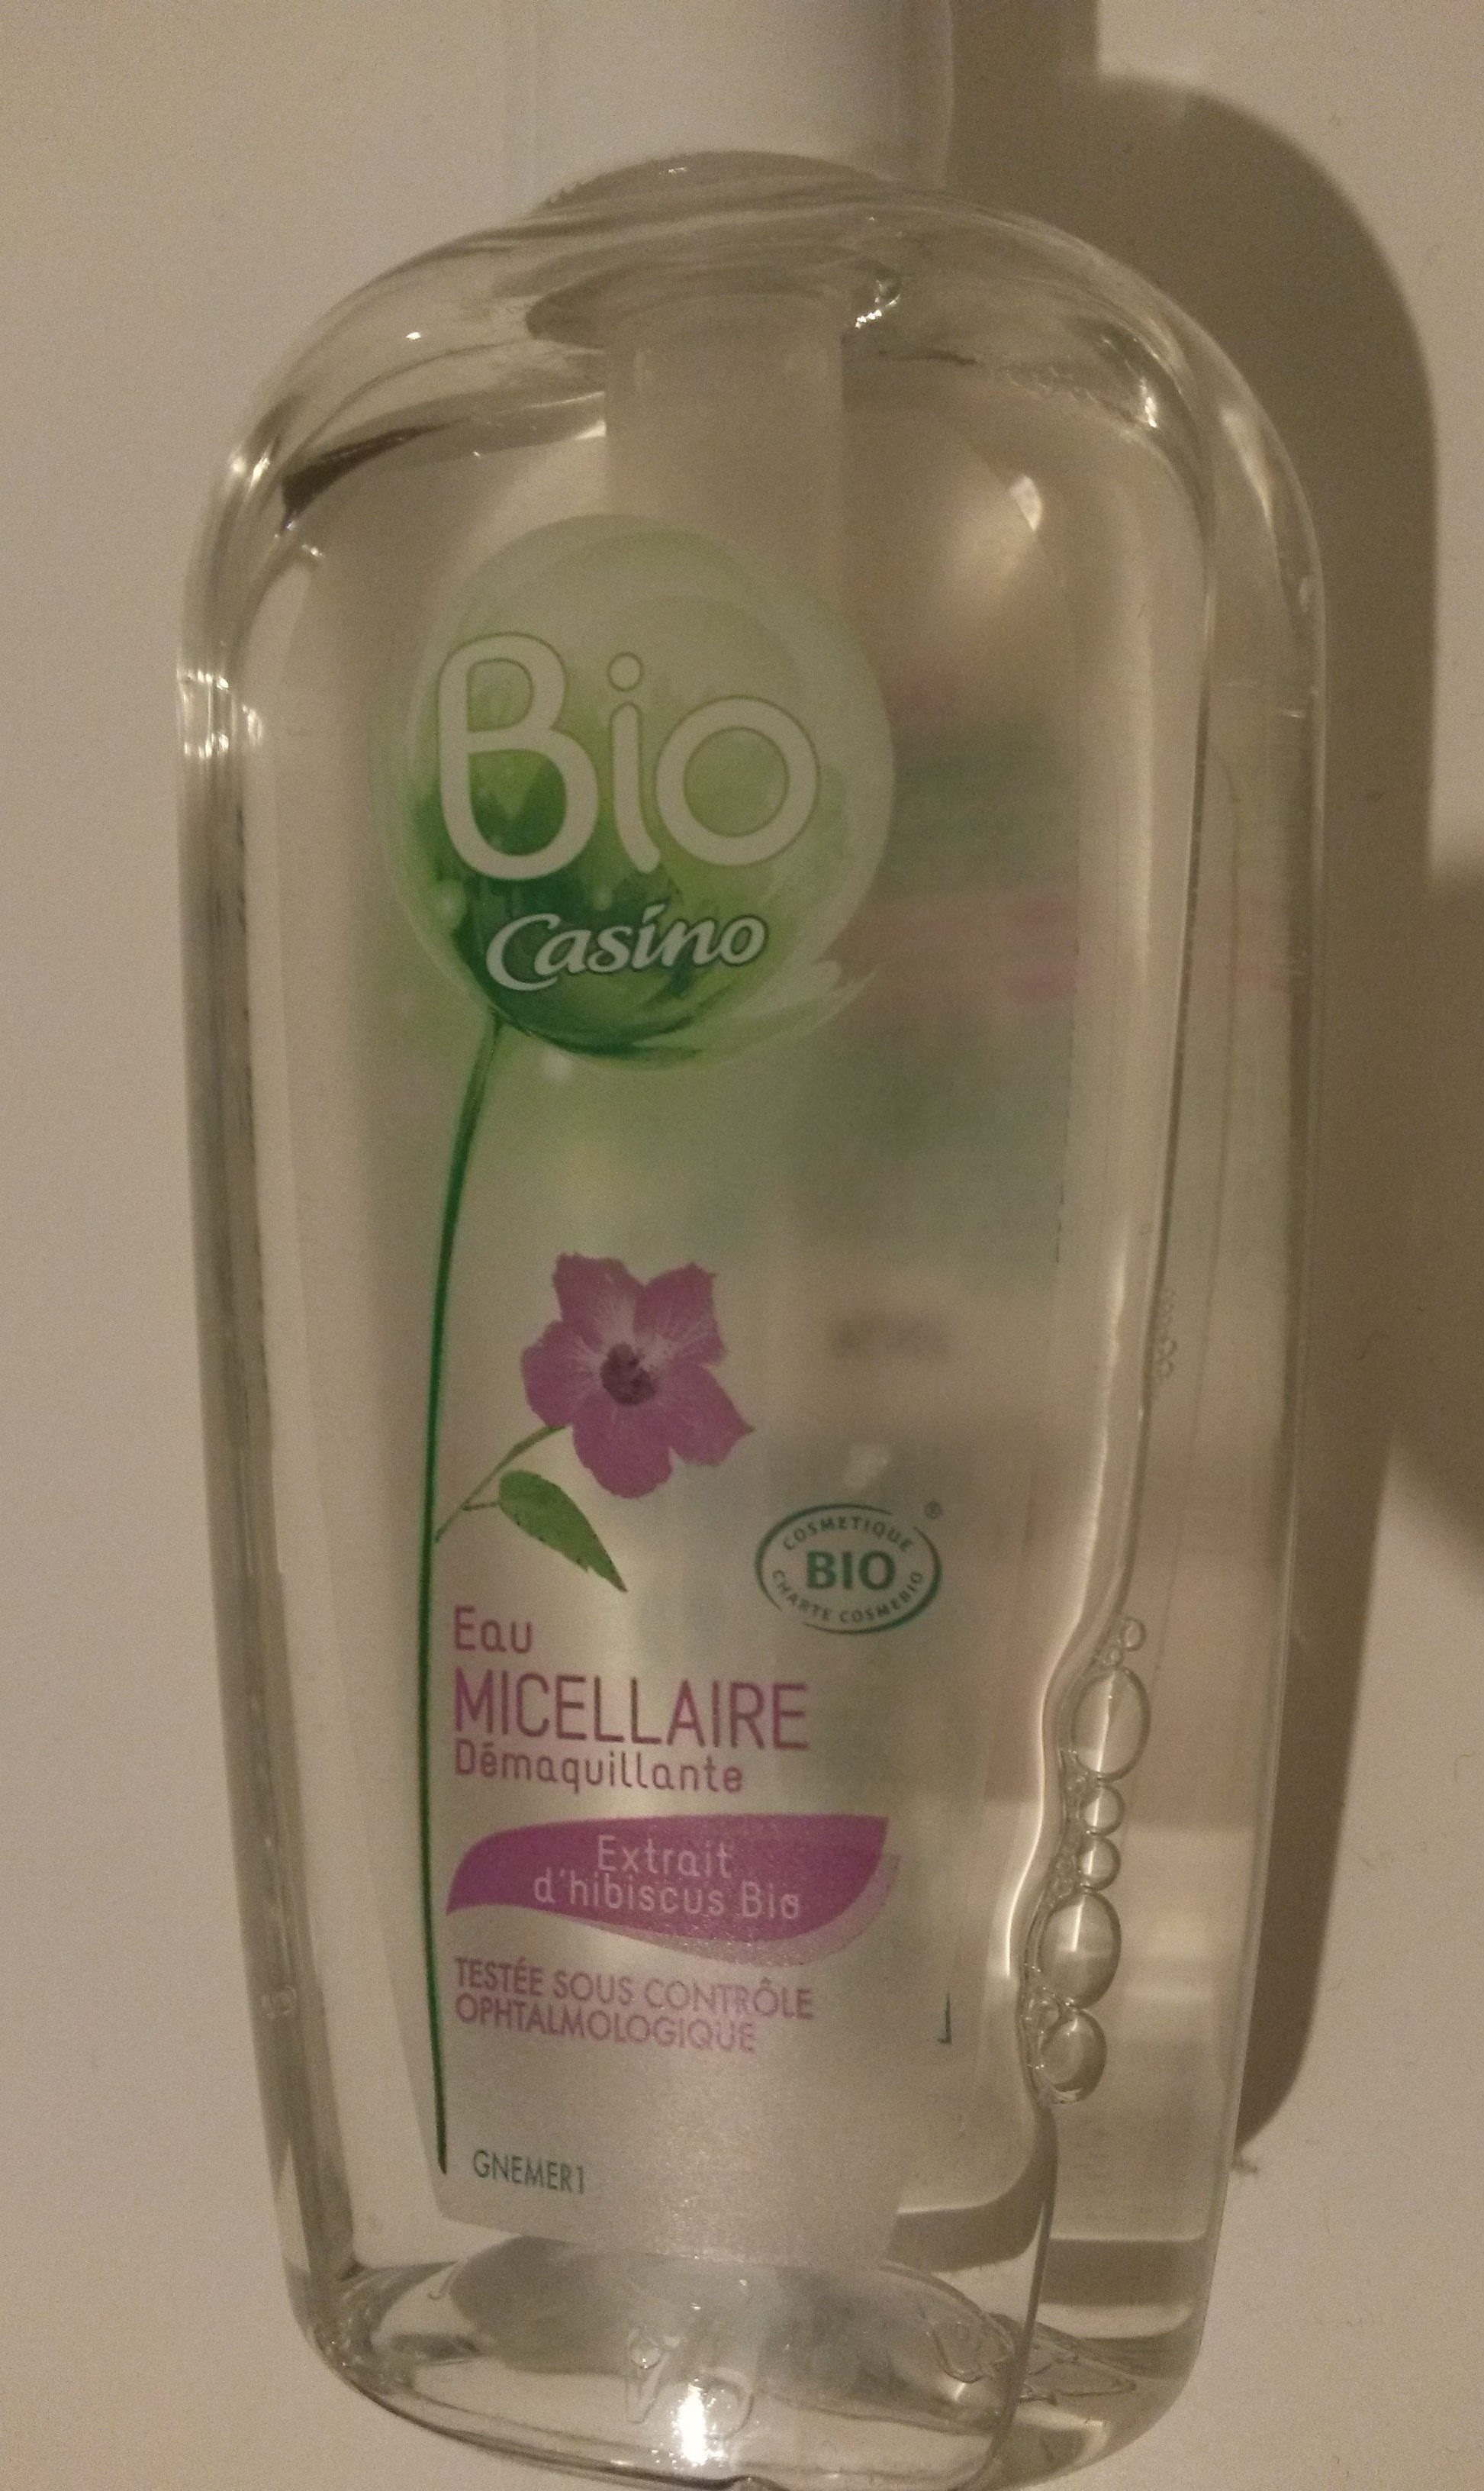 Eau micellaire démaquillante - extrait d'hibiscus bio - Product - fr